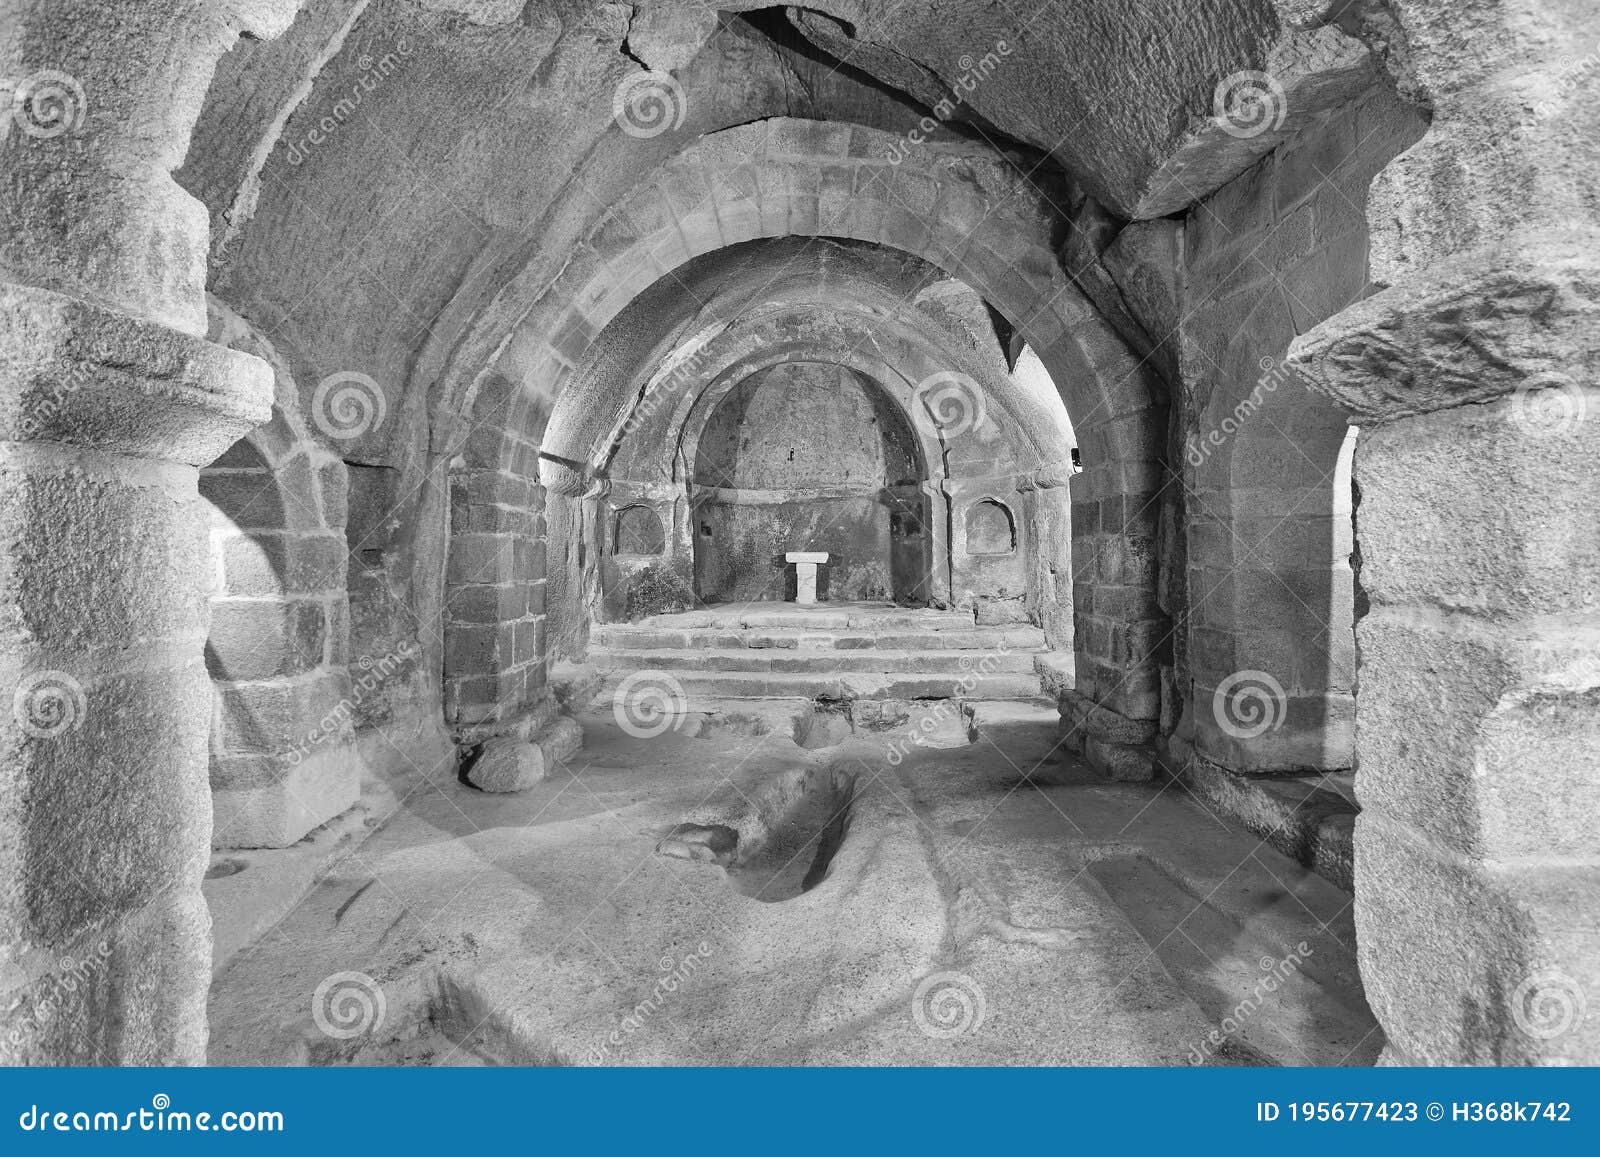 romanesque abbey in ribeira sacra. san pedro de rocas. galicia